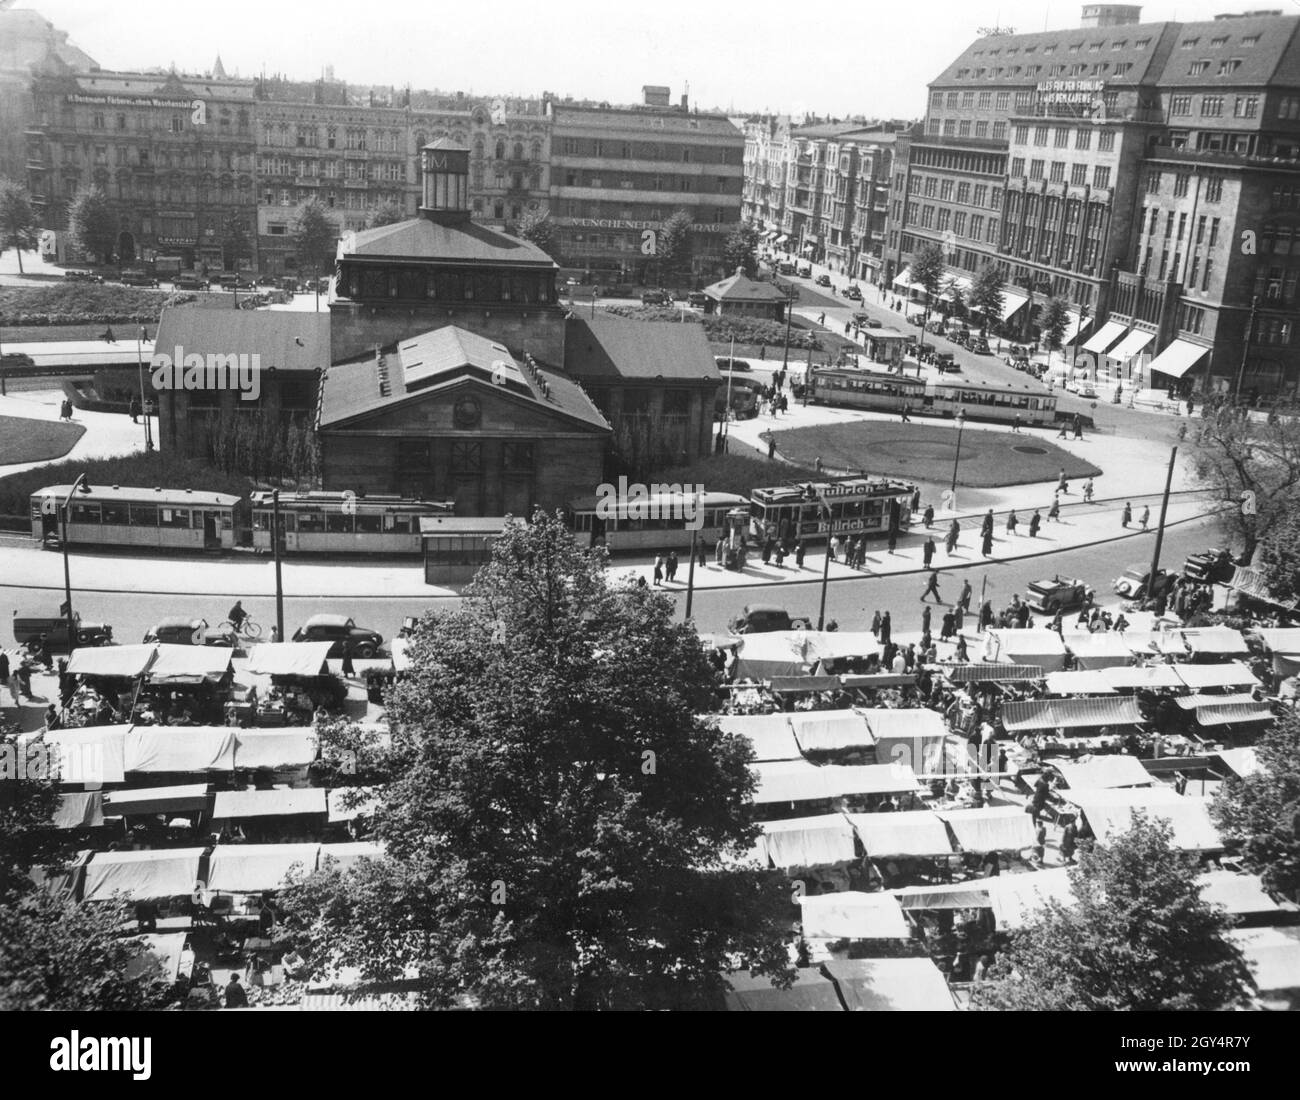 Der Wittenbergplatz in Berlin-Schöneberg ist am 13. Mai 1938 von den Ständen eines Wochenmarktes gesäumt. Hinter der U-Bahn-Station sind Häuser mit Geschäften und Pubs wie: ''H. Bergmann Färberei u. ehem. Waschanstalt'' und ''Münchener Löwenbräu''. Auf der rechten Seite wirbt das Kaufhaus des Westens mit ''alles für den Frühling aus dem KaDeWe''. [Automatisierte Übersetzung]' Stockfoto